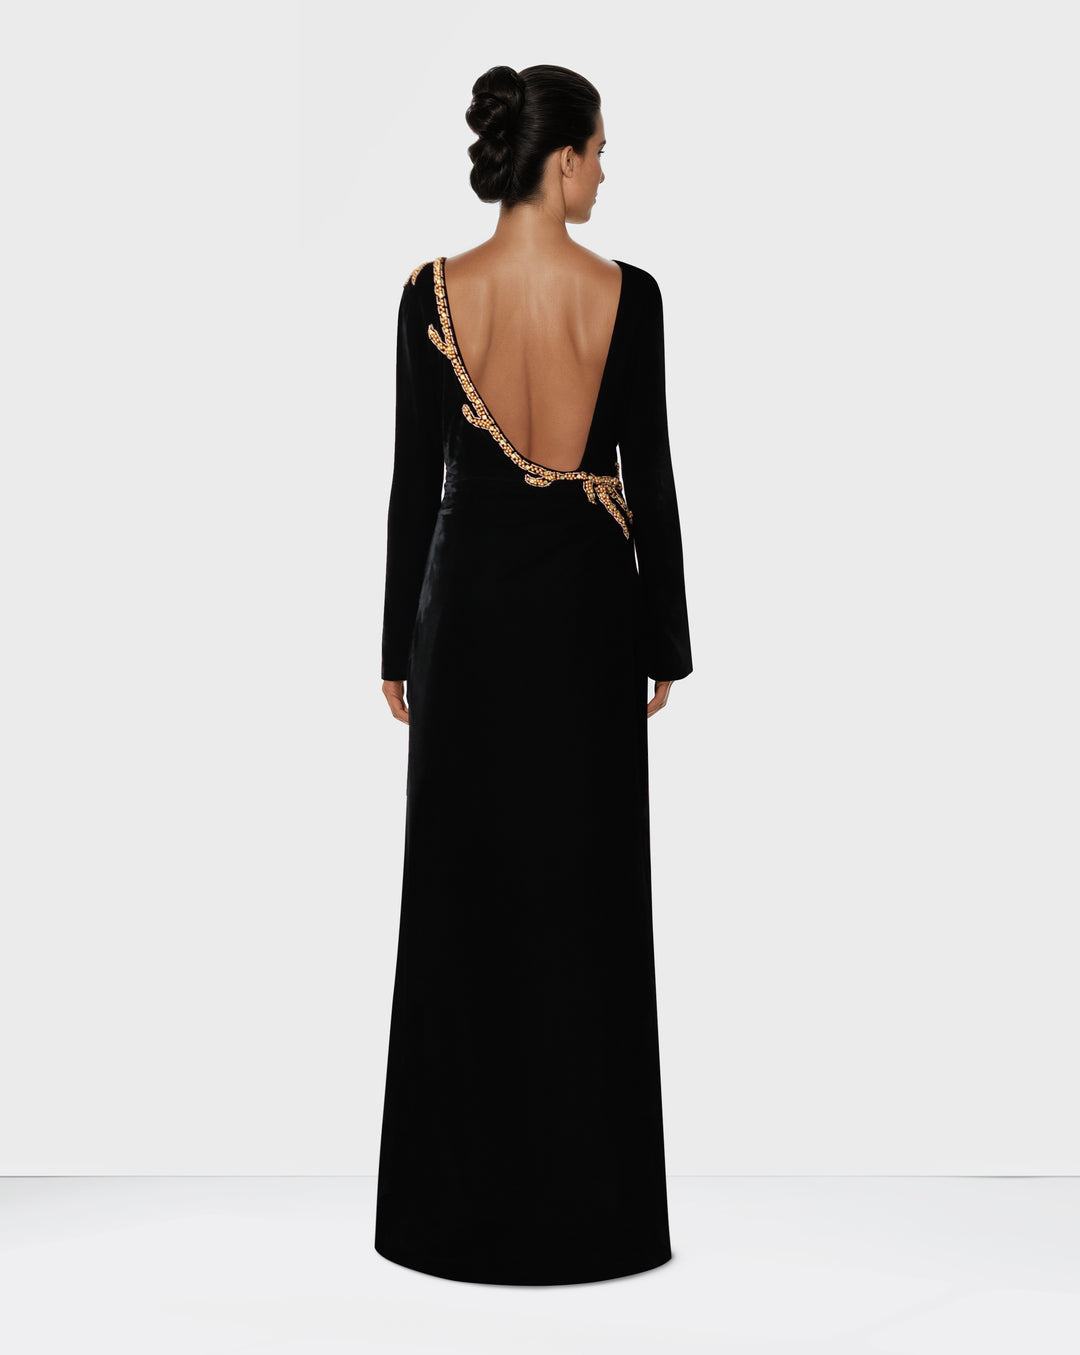 Long sleeve black velvet column dress with back neckline - Shevalini